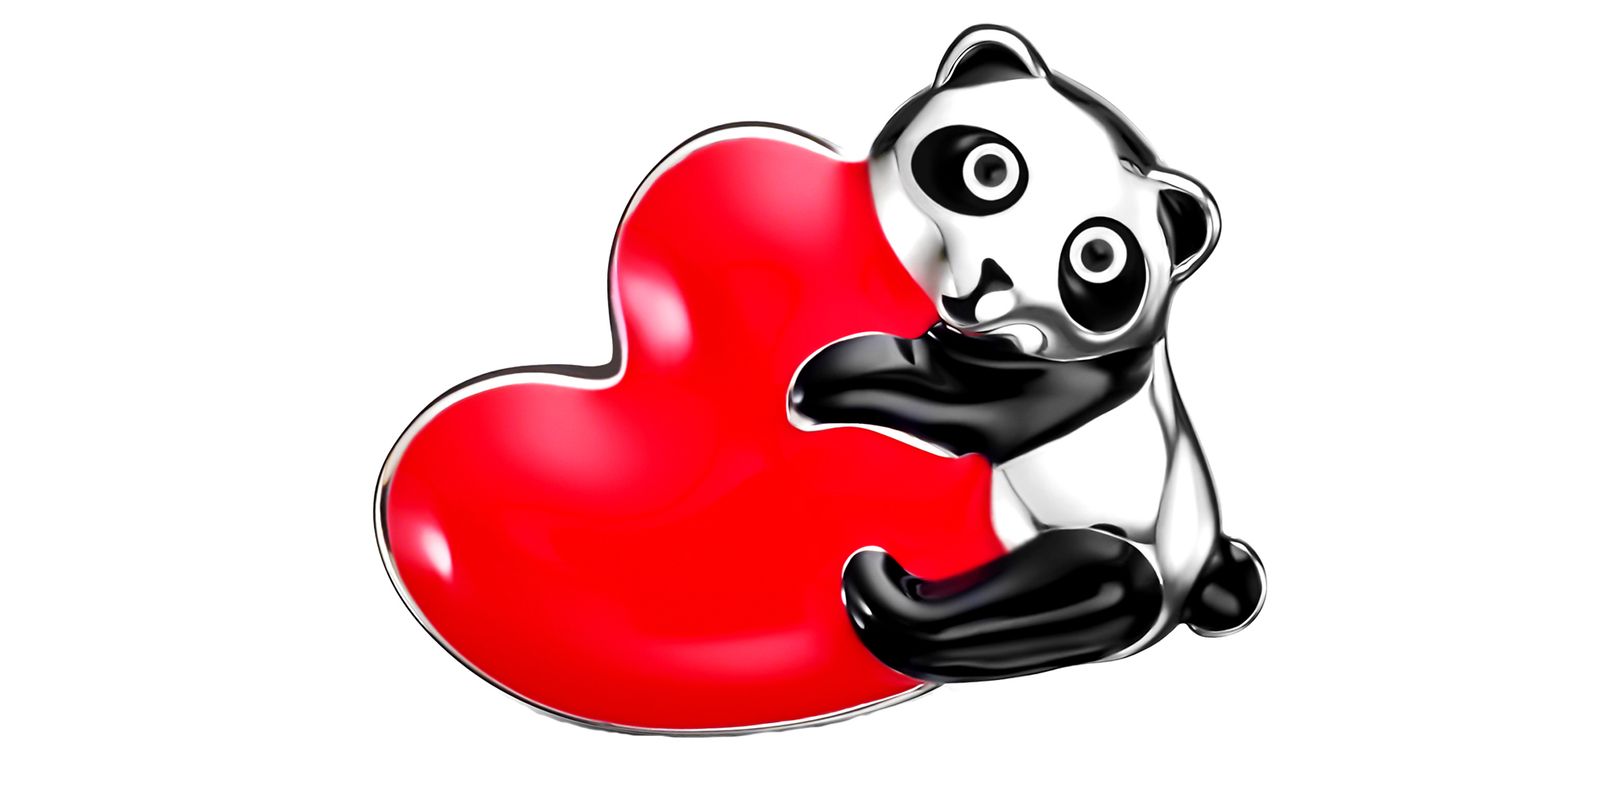 My panda heart